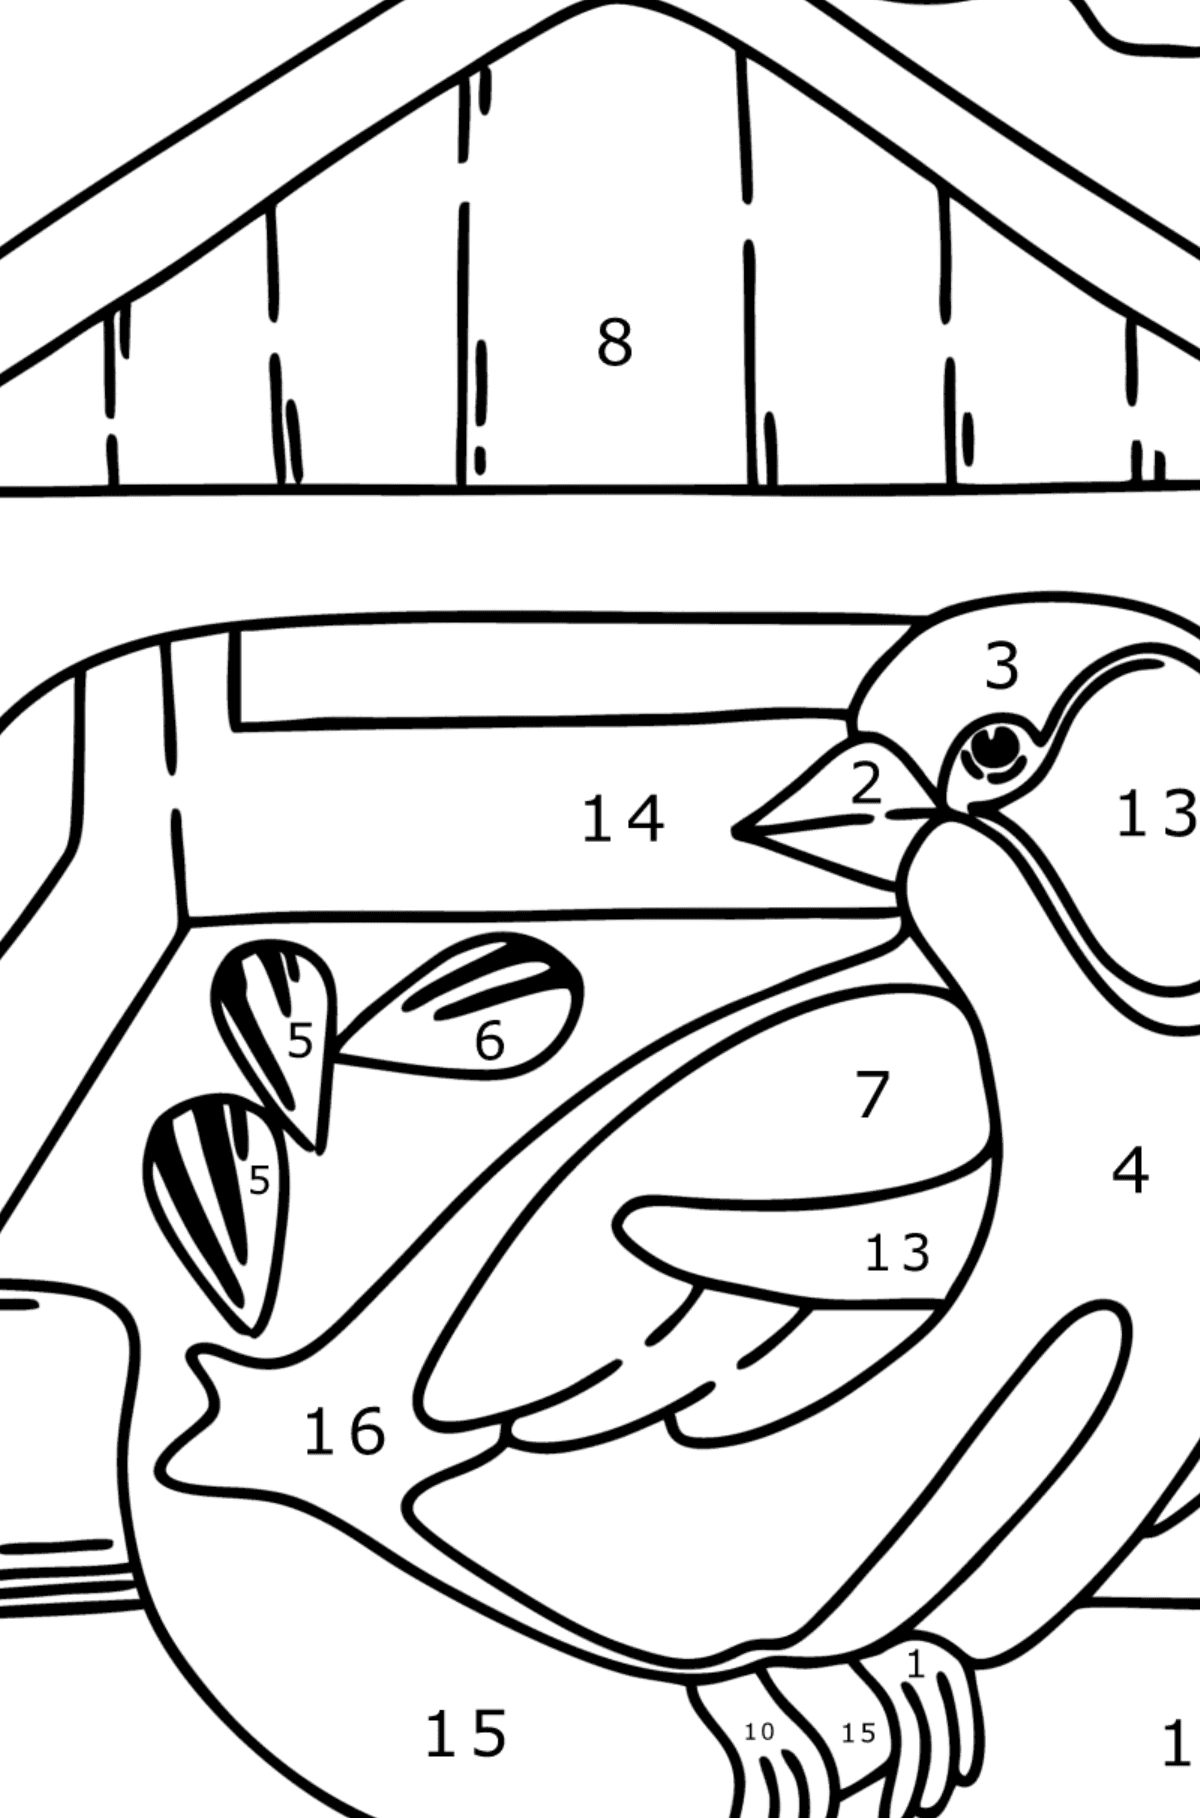 Tegning til farvning foderautomater til fugle - Farvelægning side af tallene for børn